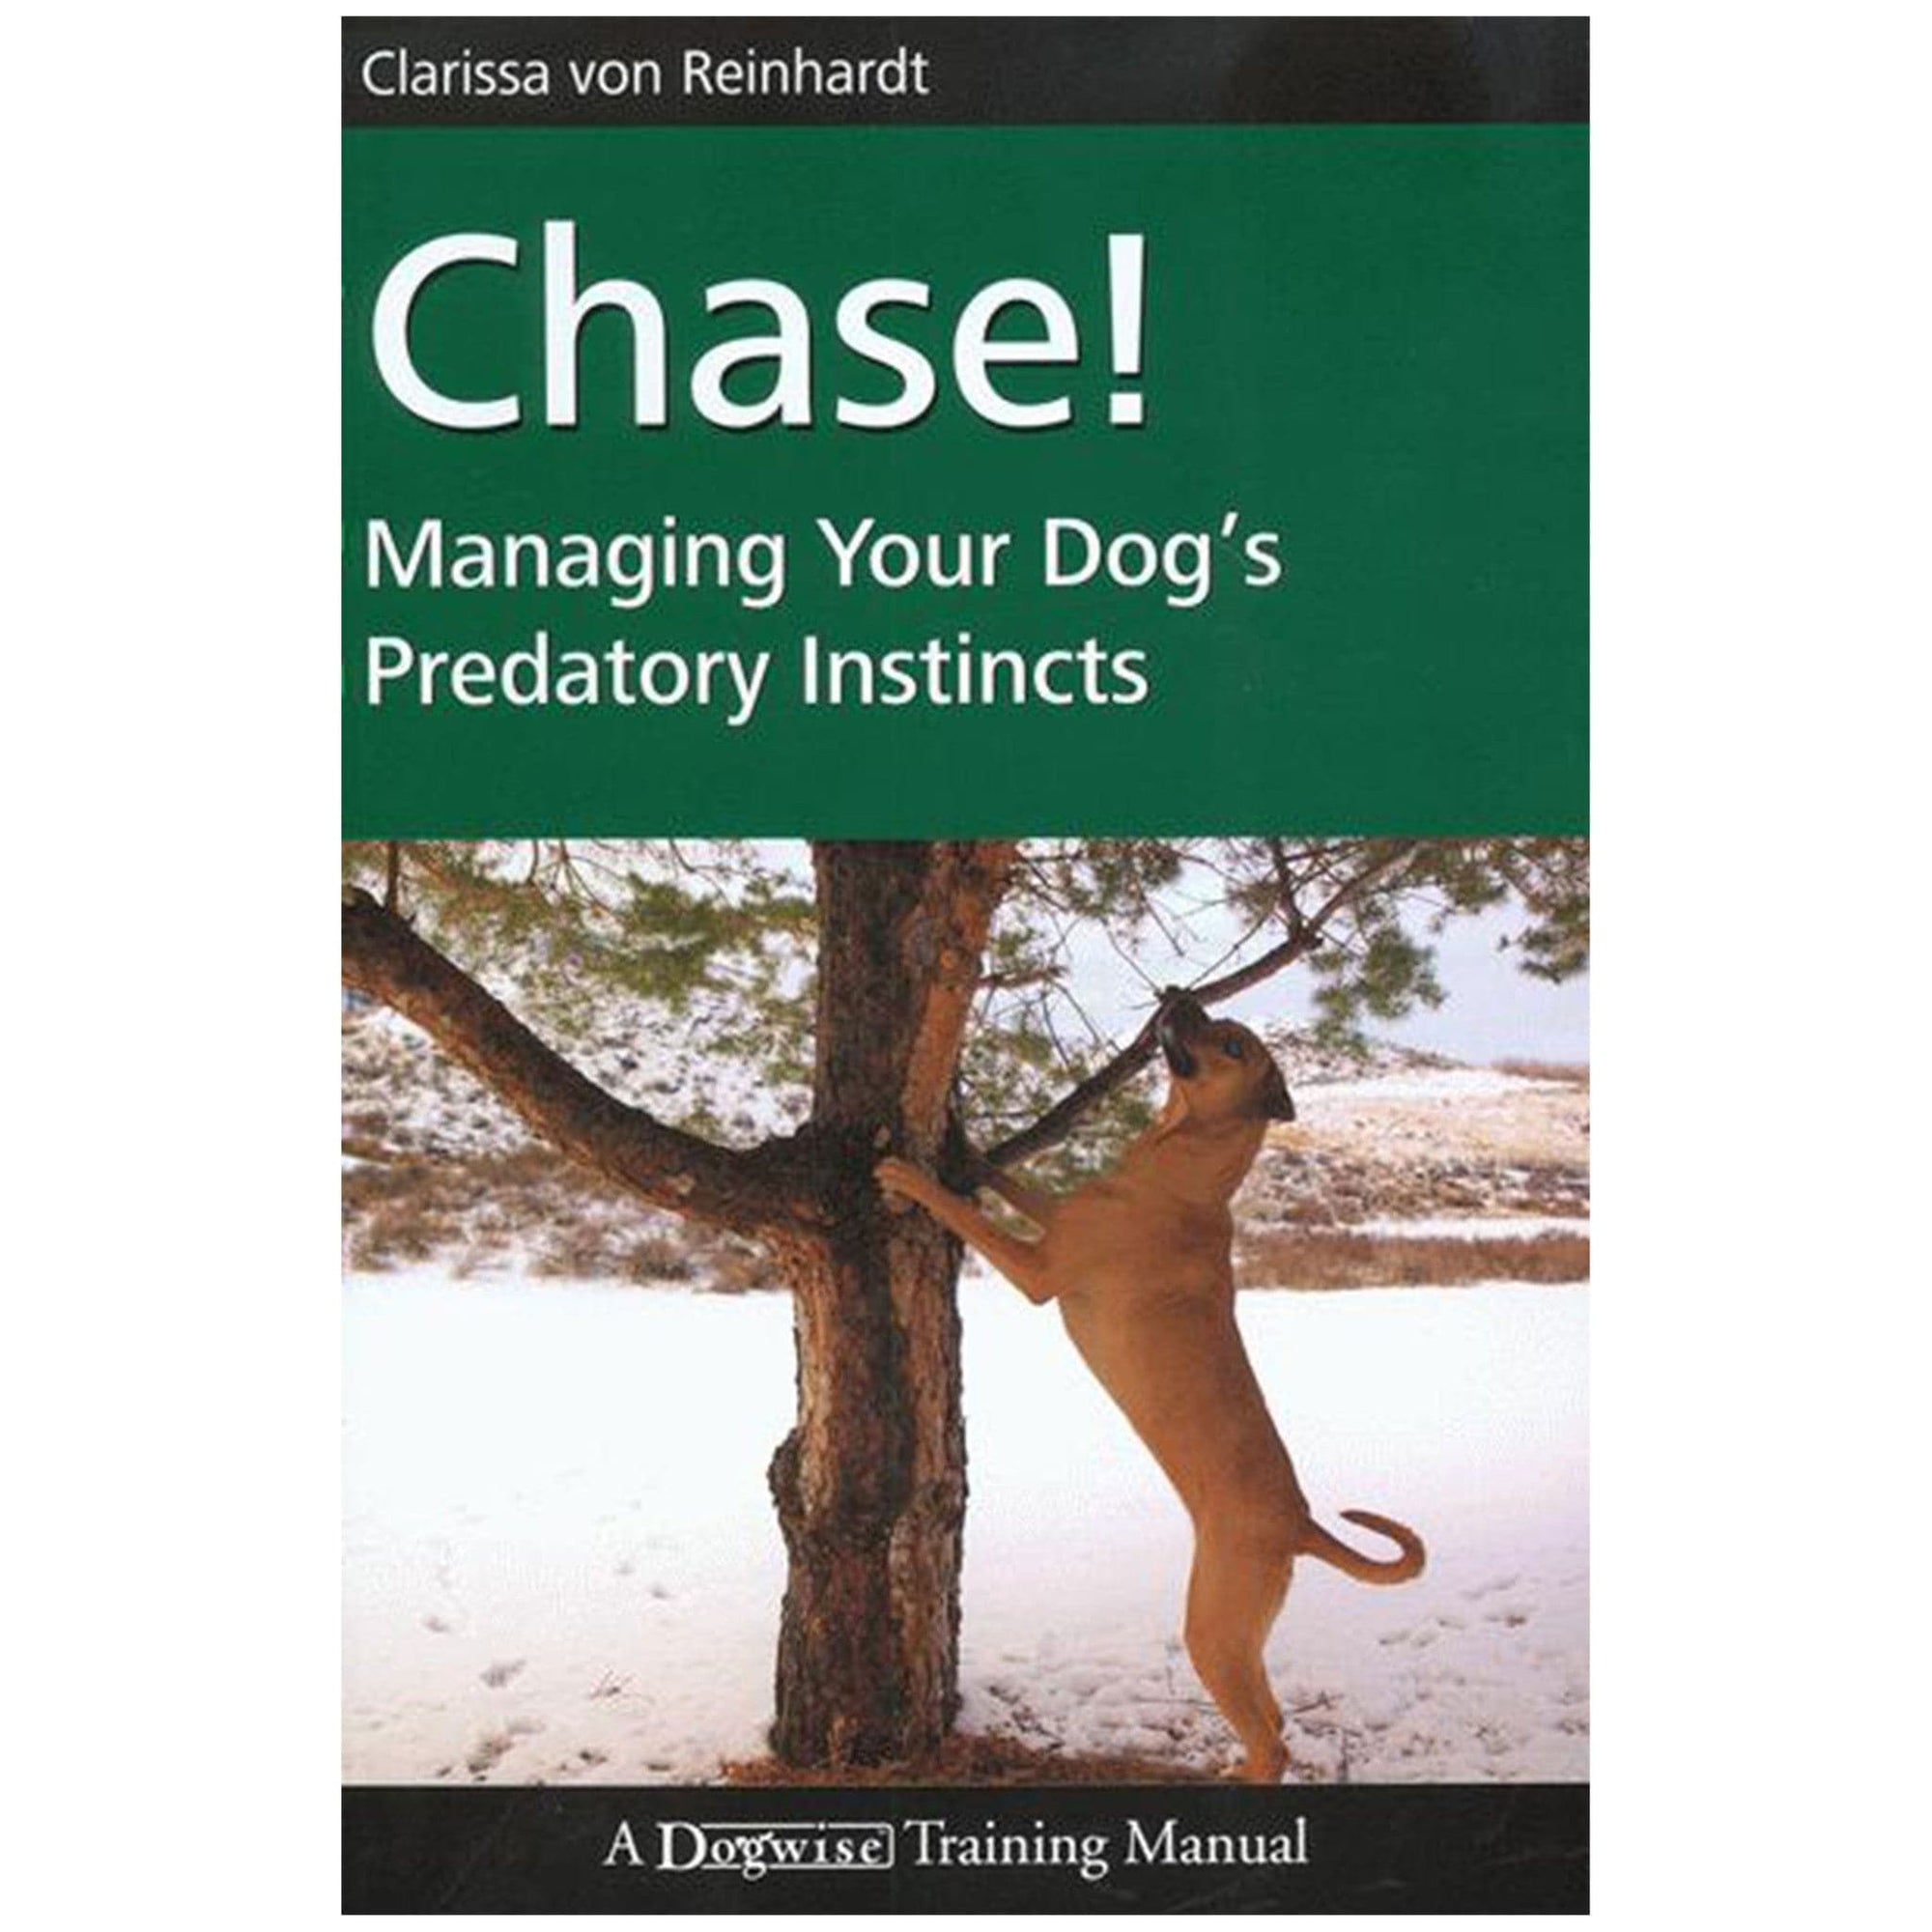 E-BOOK Chase! Managing Your Dog’s Predatory Instincts by Clarissa von Reinhardt